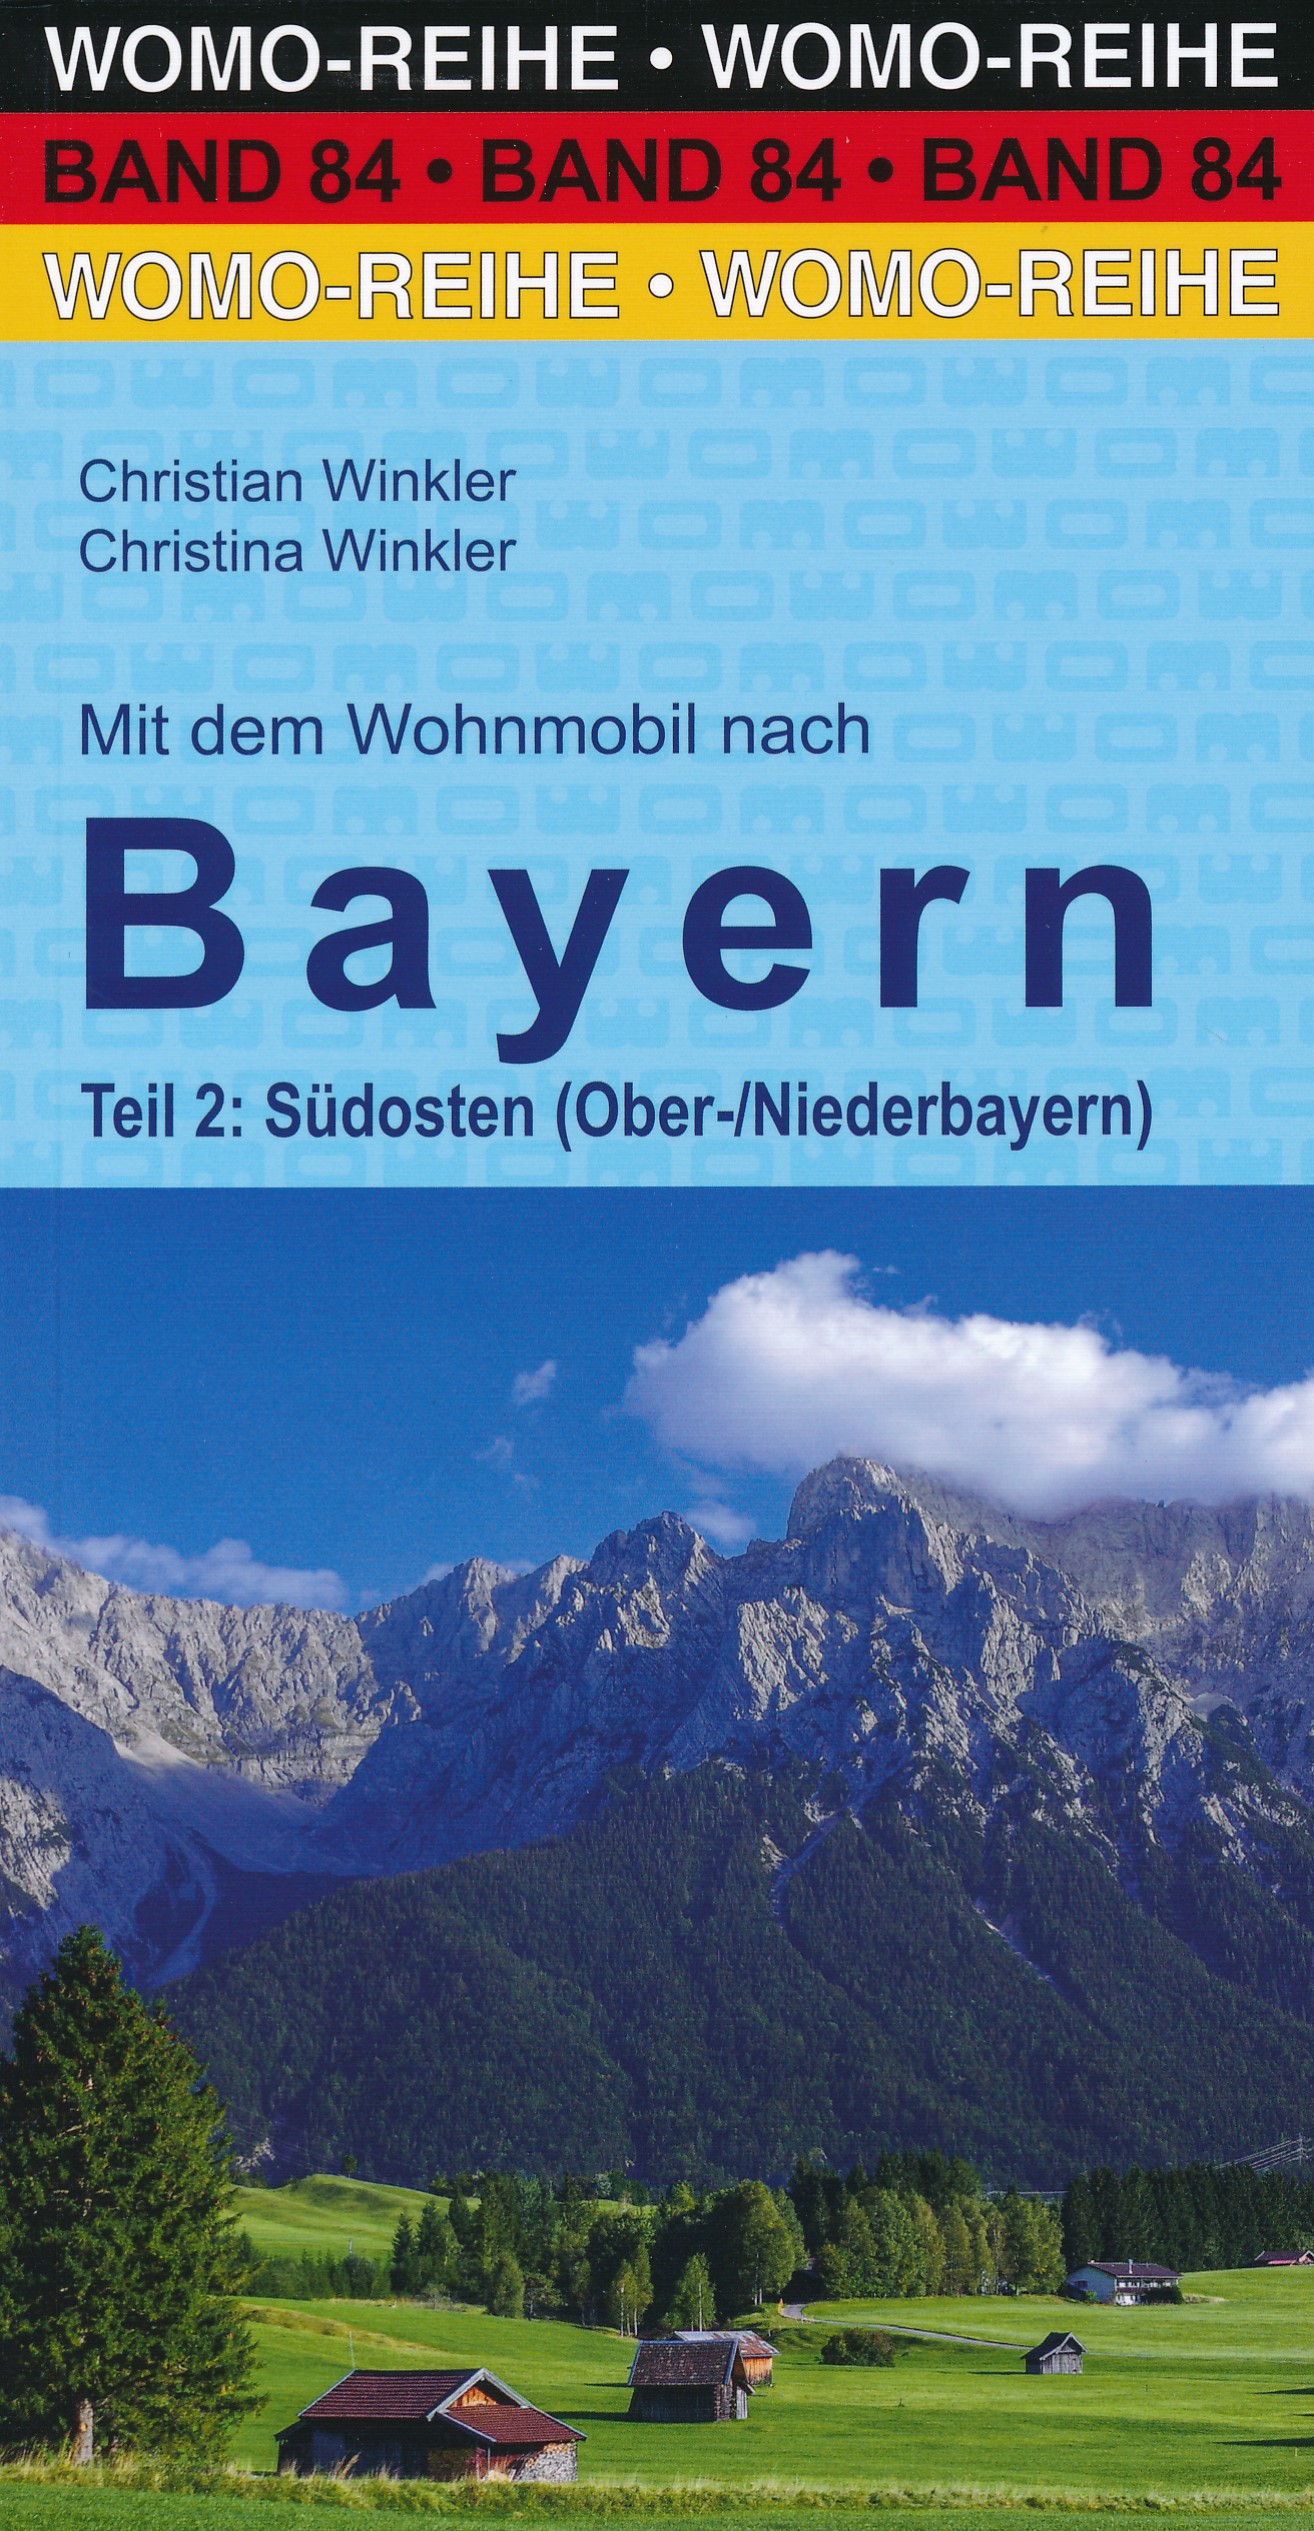 Online bestellen: Campergids 84 Mit dem Wohnmobil nach Bayern, Teil 2: Südosten | WOMO verlag